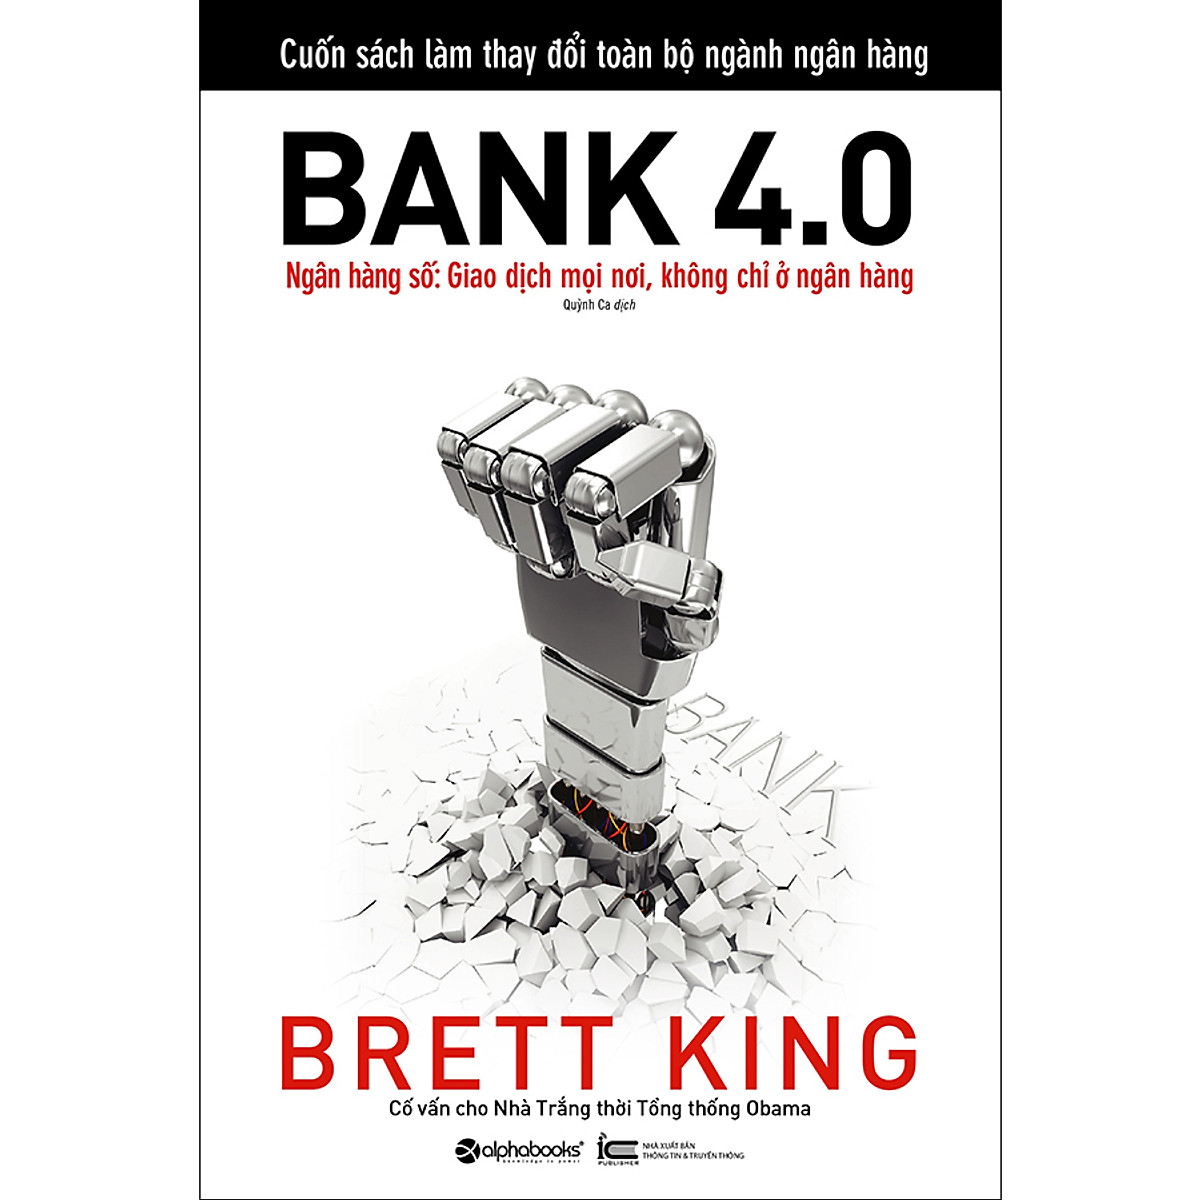 Combo 2 cuốn sách: Data Strategy - Chiến Lược Dữ Liệu + Bank 4.0 (Ngân Hàng Số : Giao Dịch Ở Mọi Nơi Không Chỉ Ở Ngân Hàng)